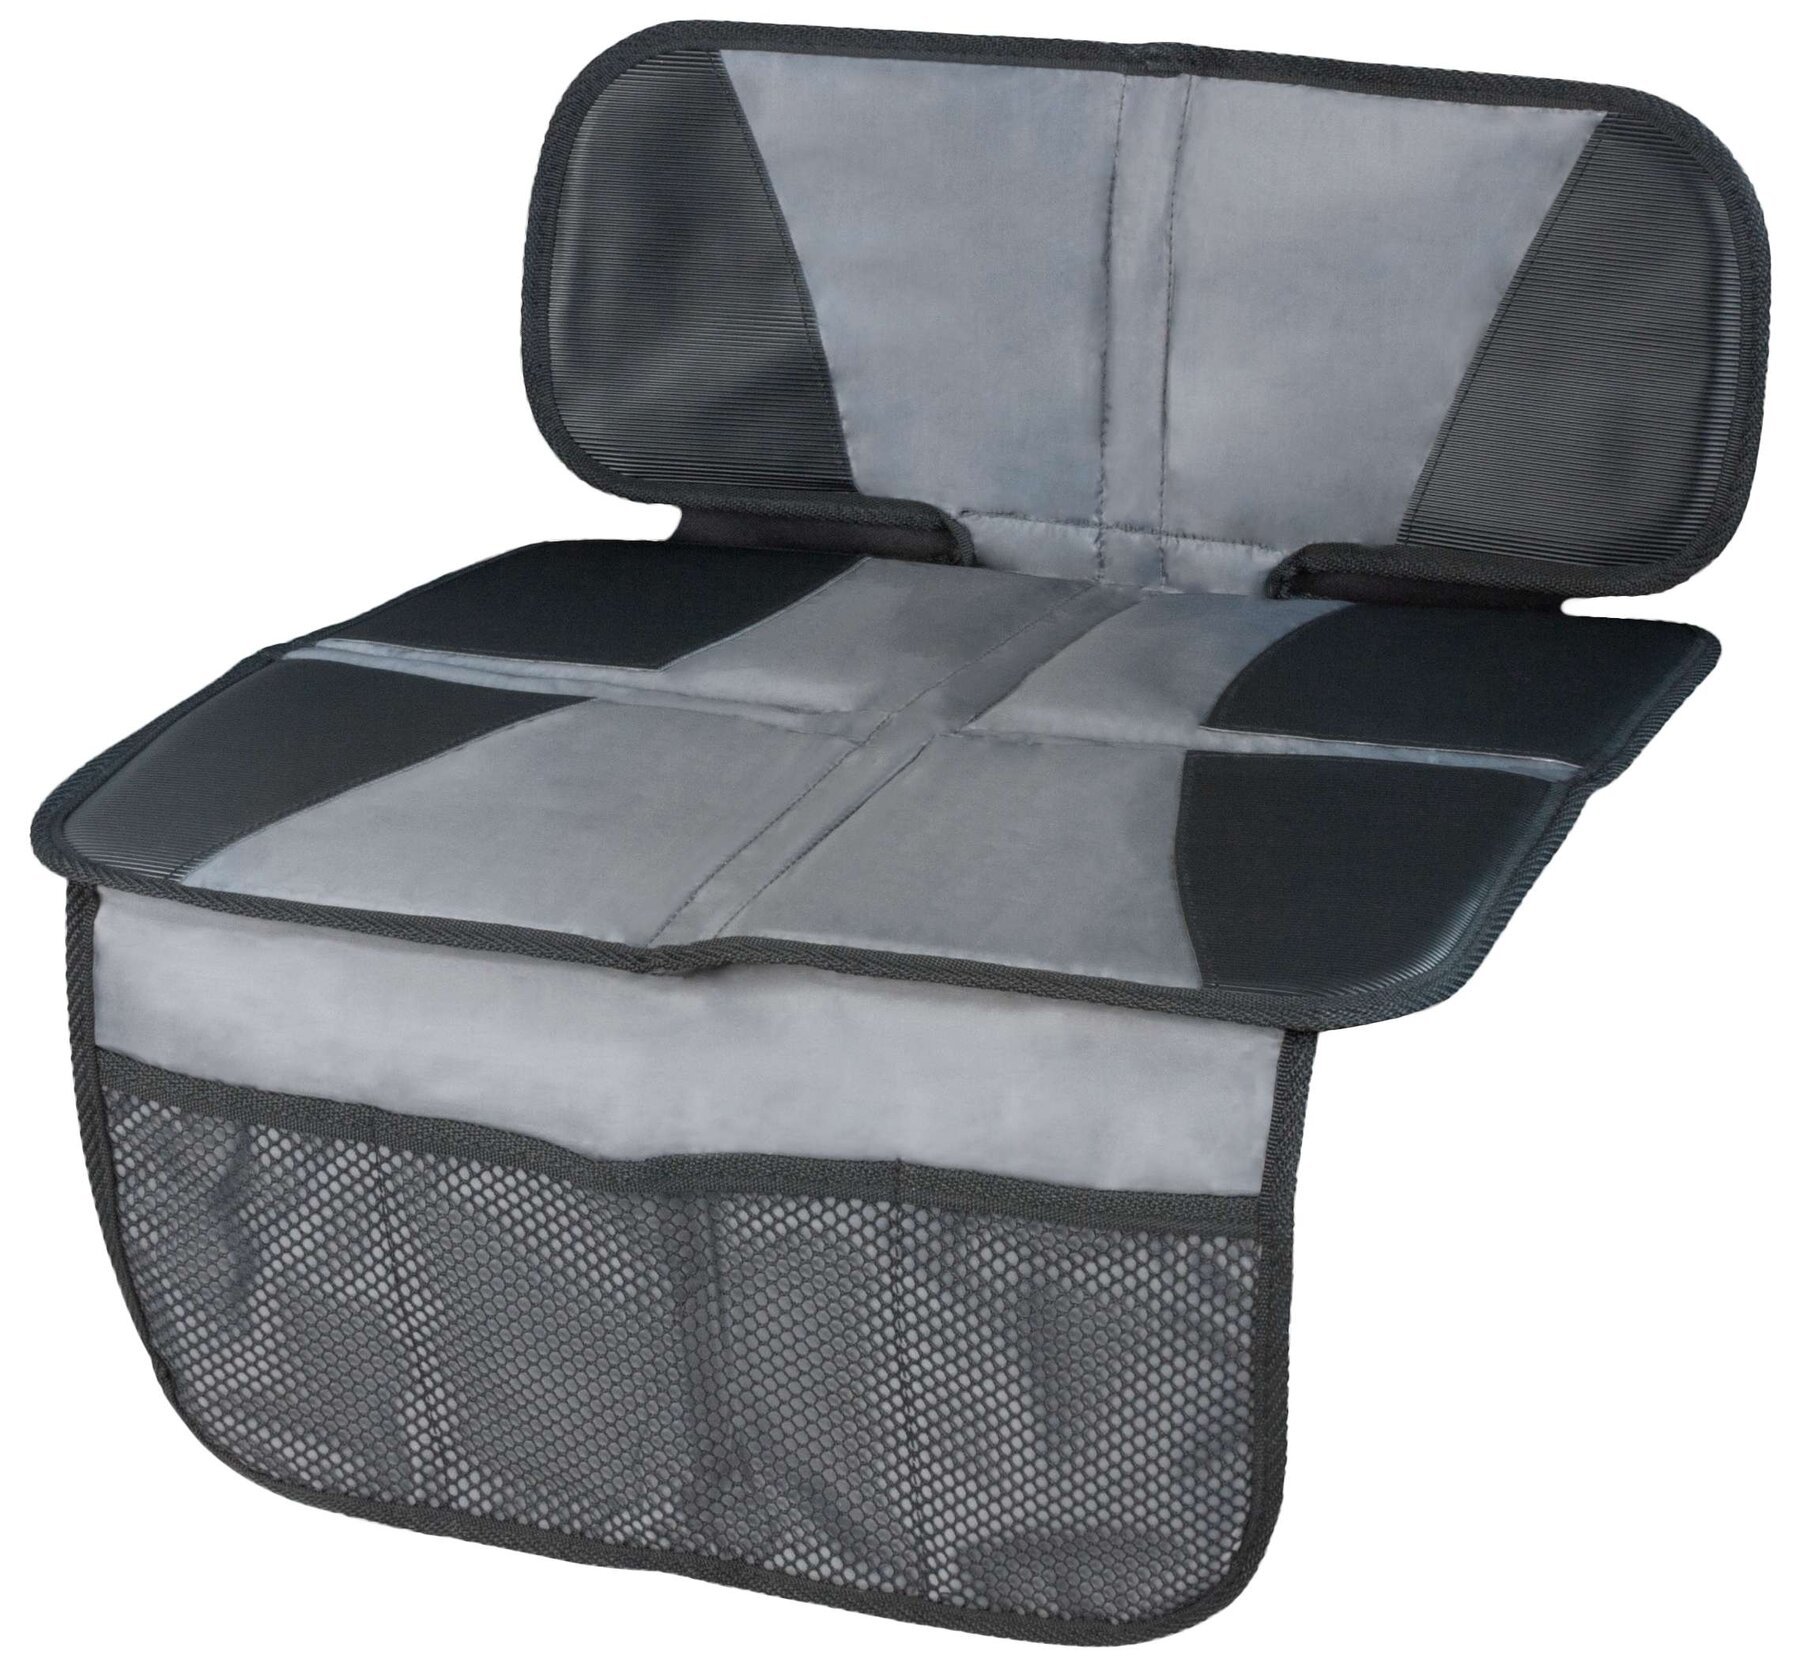 Coussin pour siège enfant Tidy Fred, tapis de protection pour siège enfant gris/noir